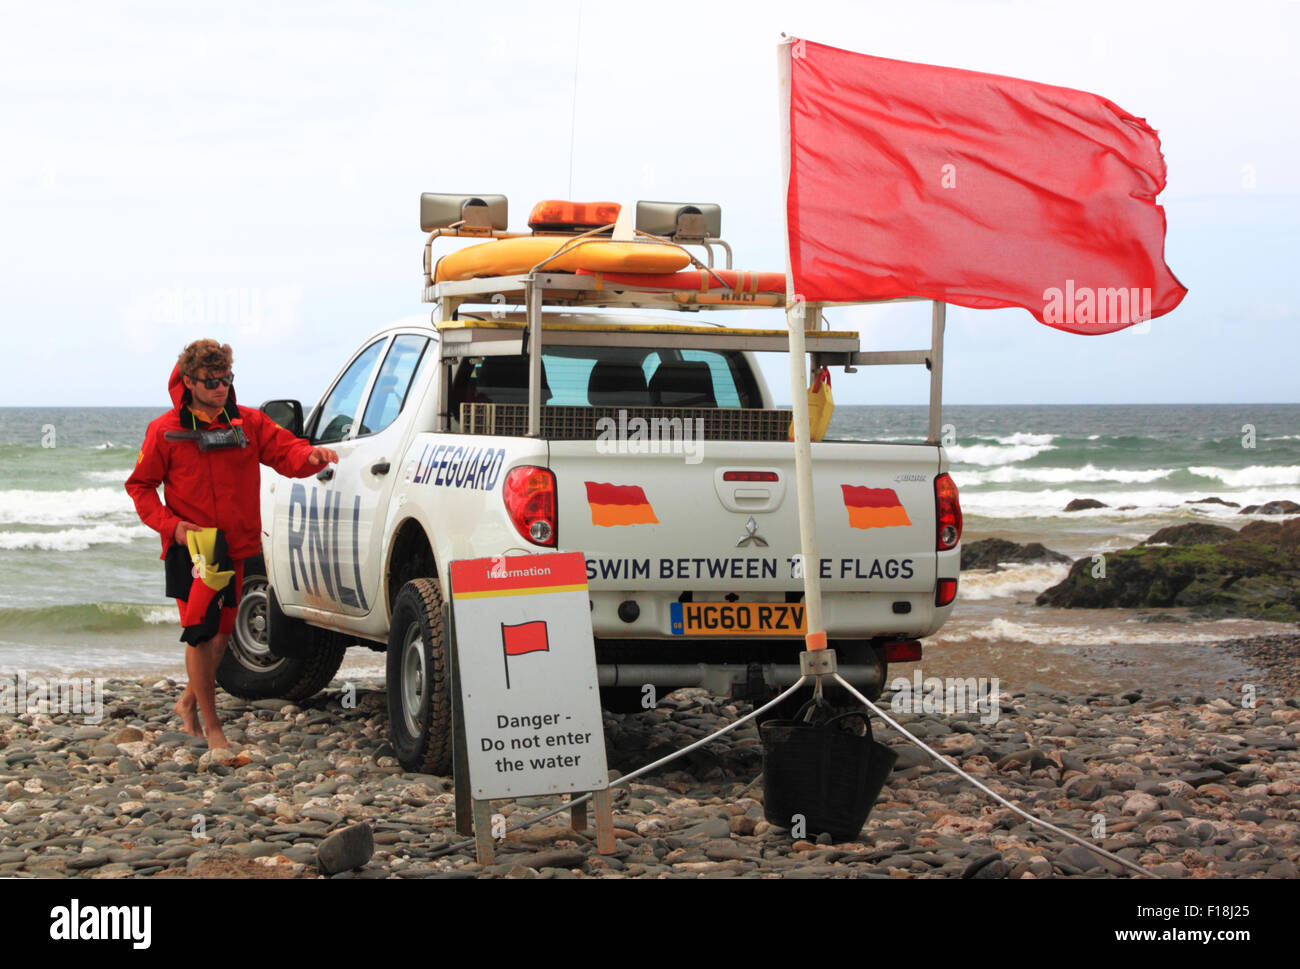 Una Toyota Hilux RNLI Lifeguard veicolo con una spia rossa bandiera che vieta la balneazione sulla spiaggia. Foto Stock